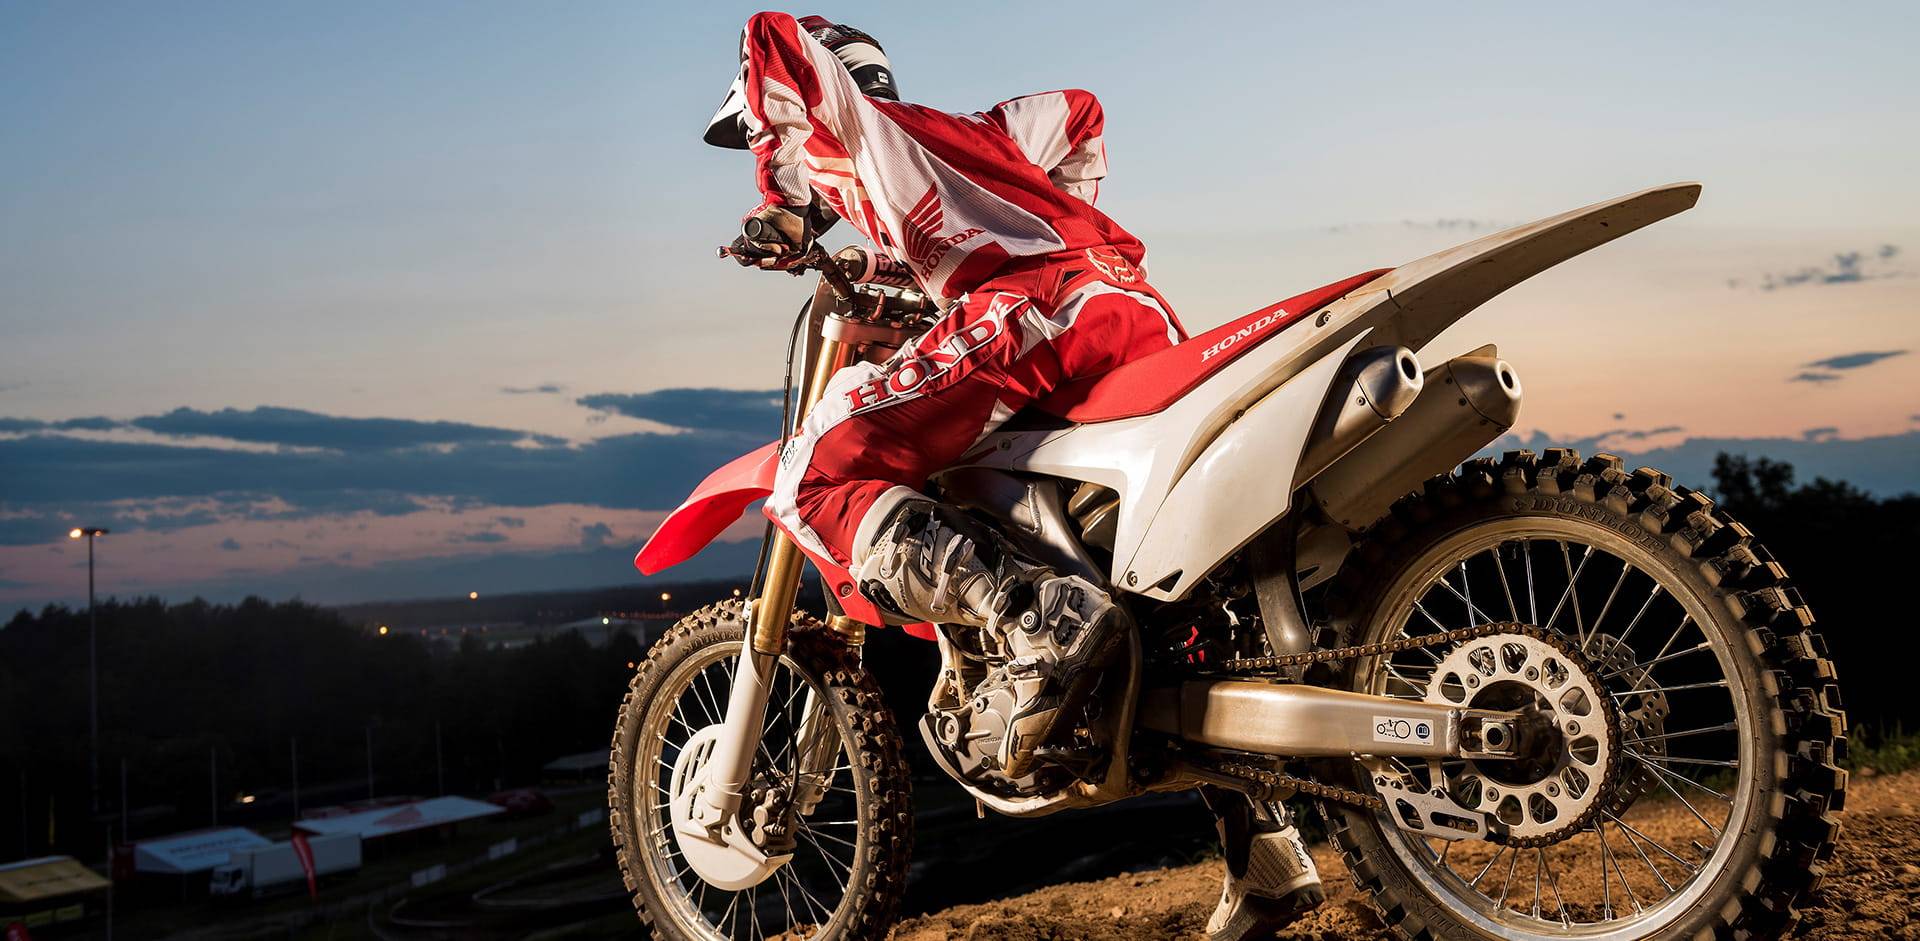 Обзор хонда crf 450: технические характеристики мотоцикла, отзывы